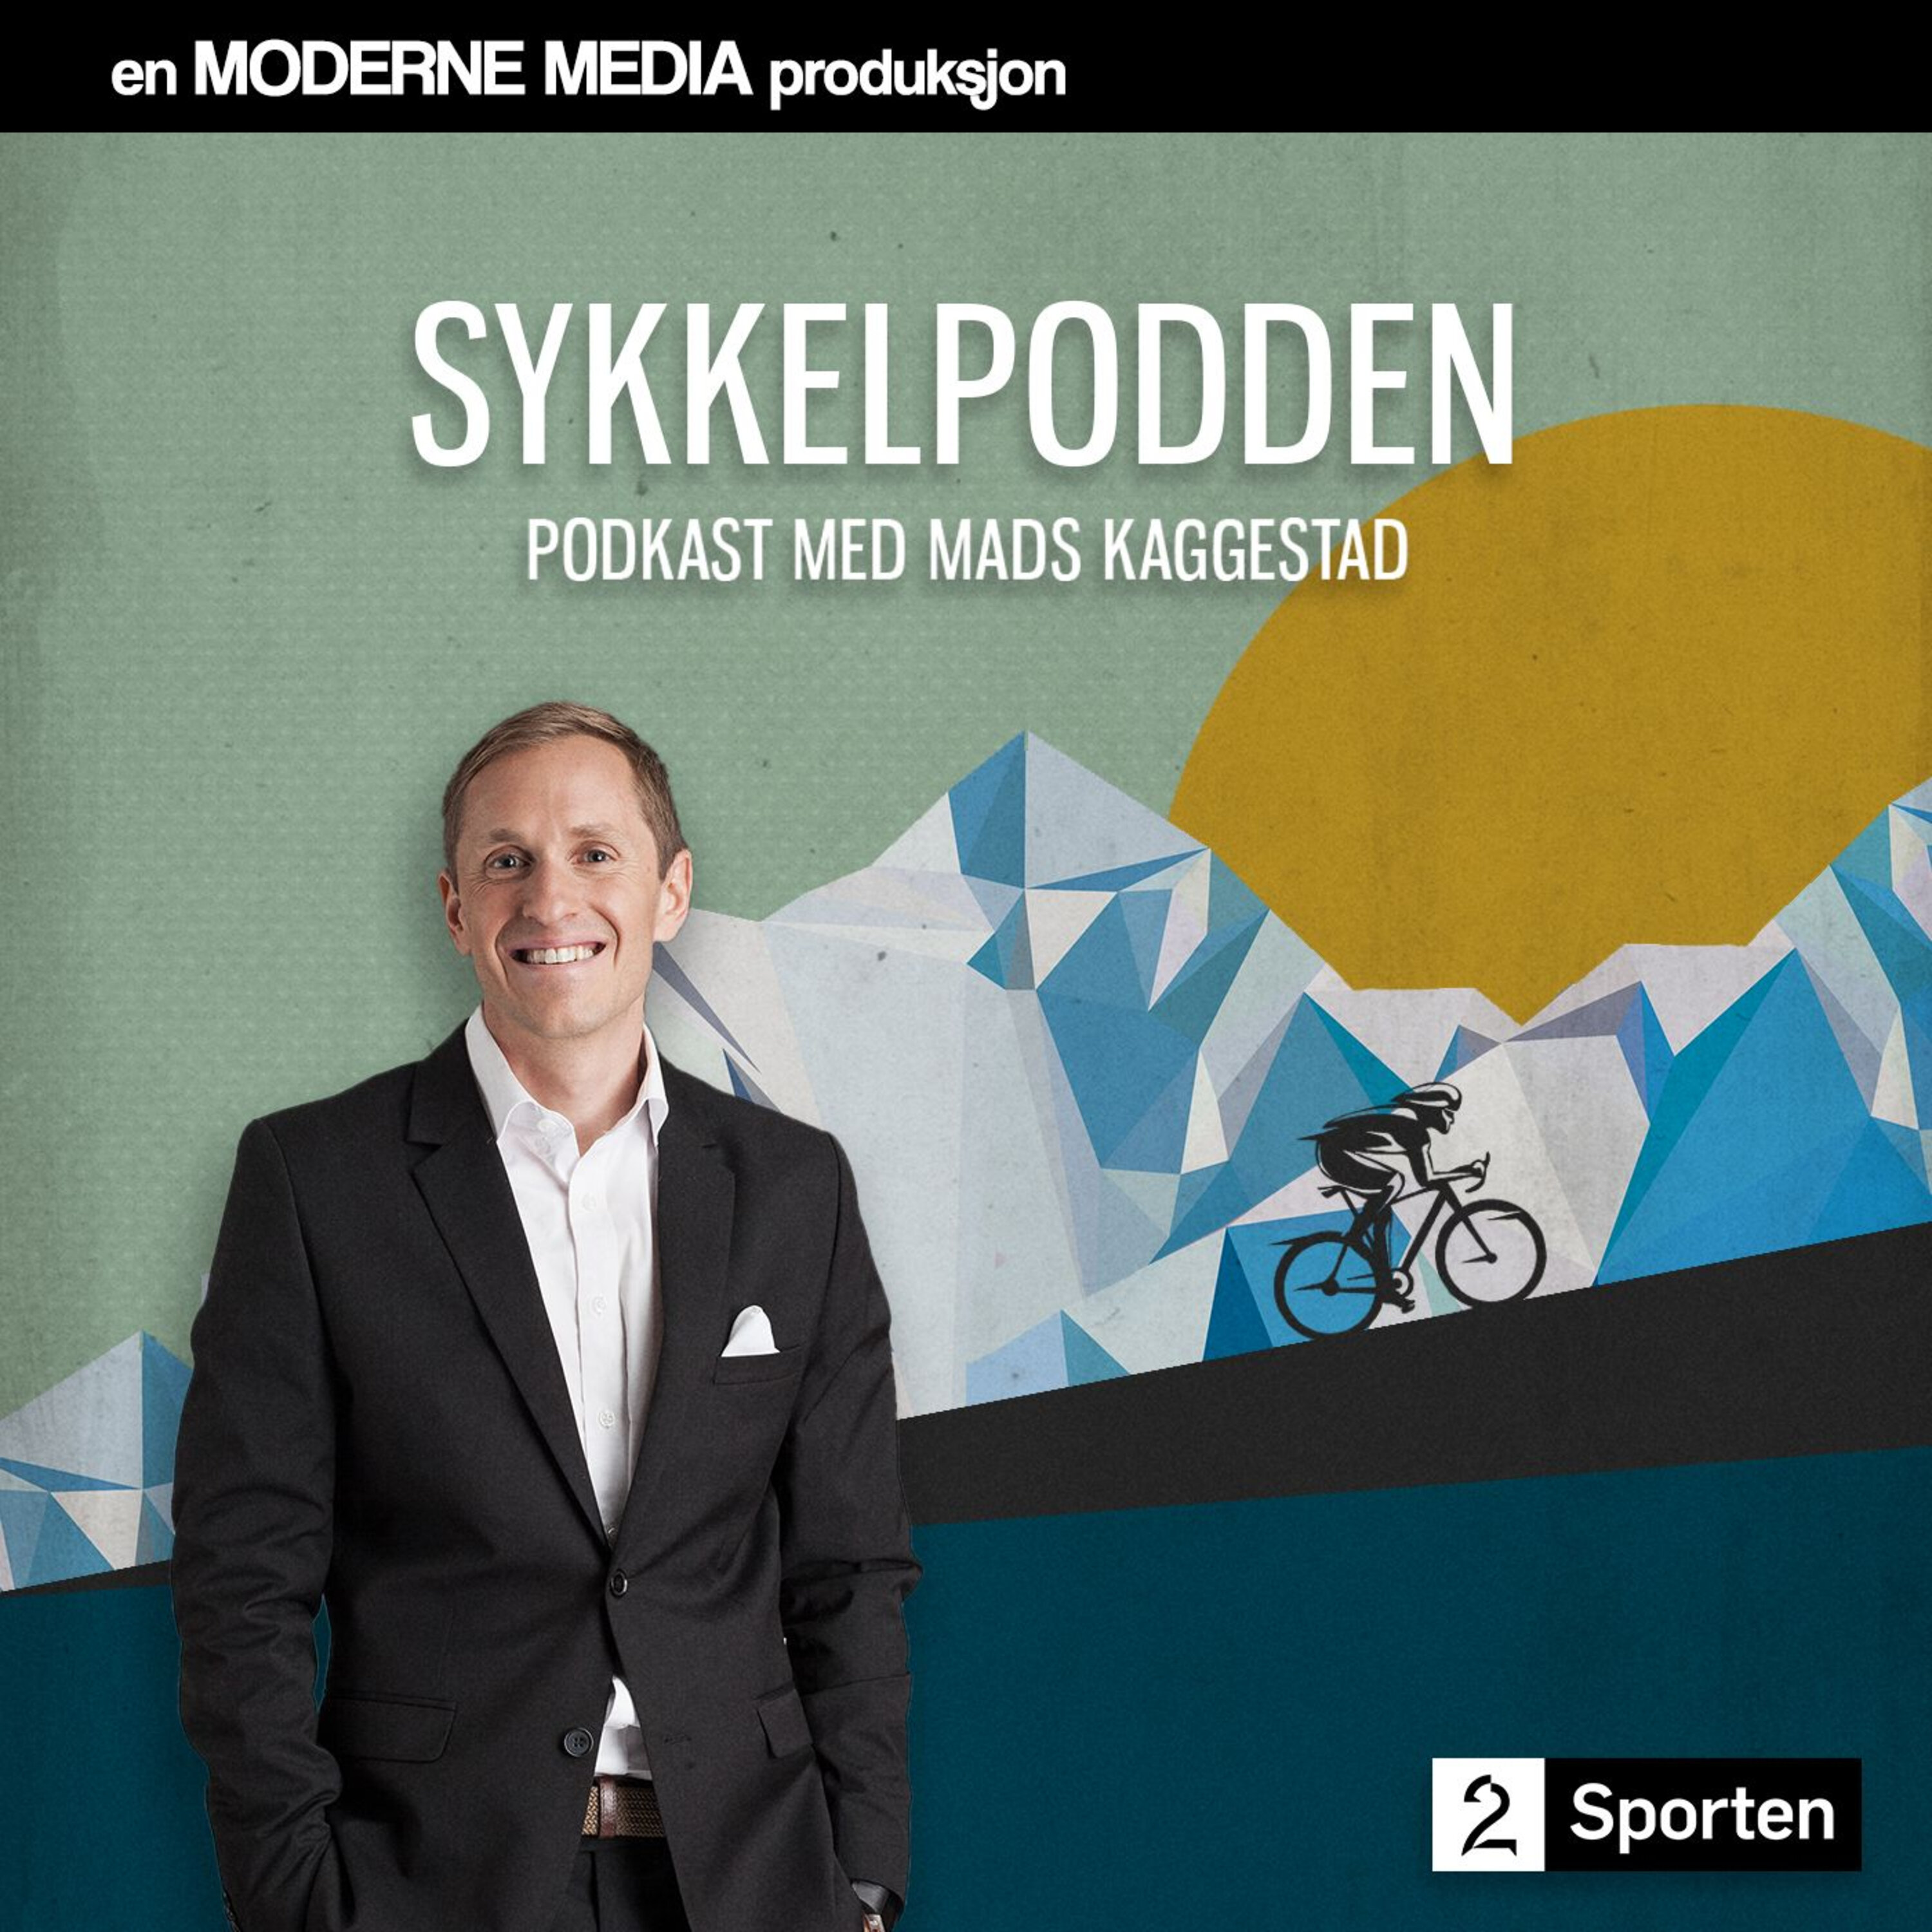 TV 2 Sykkelpodden